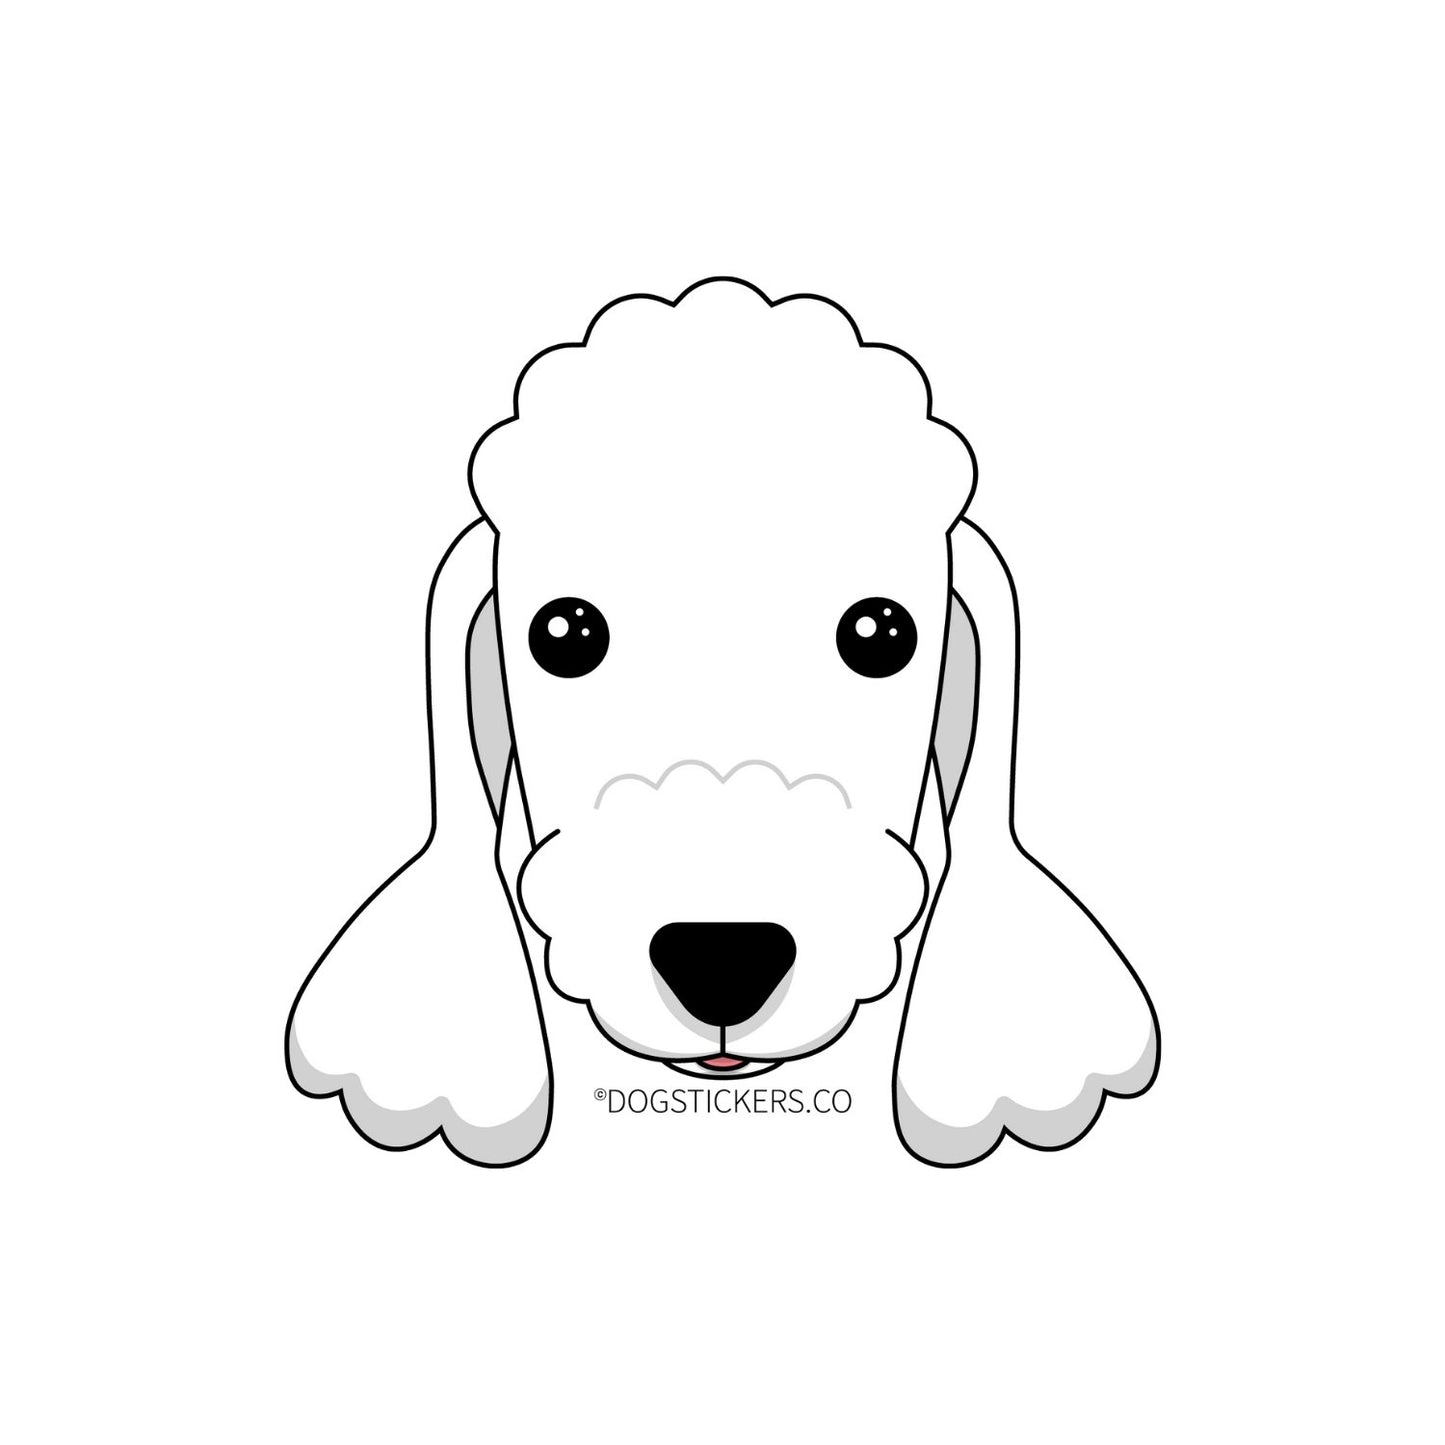 Bedlington Terrier Sticker - Dogstickers.co